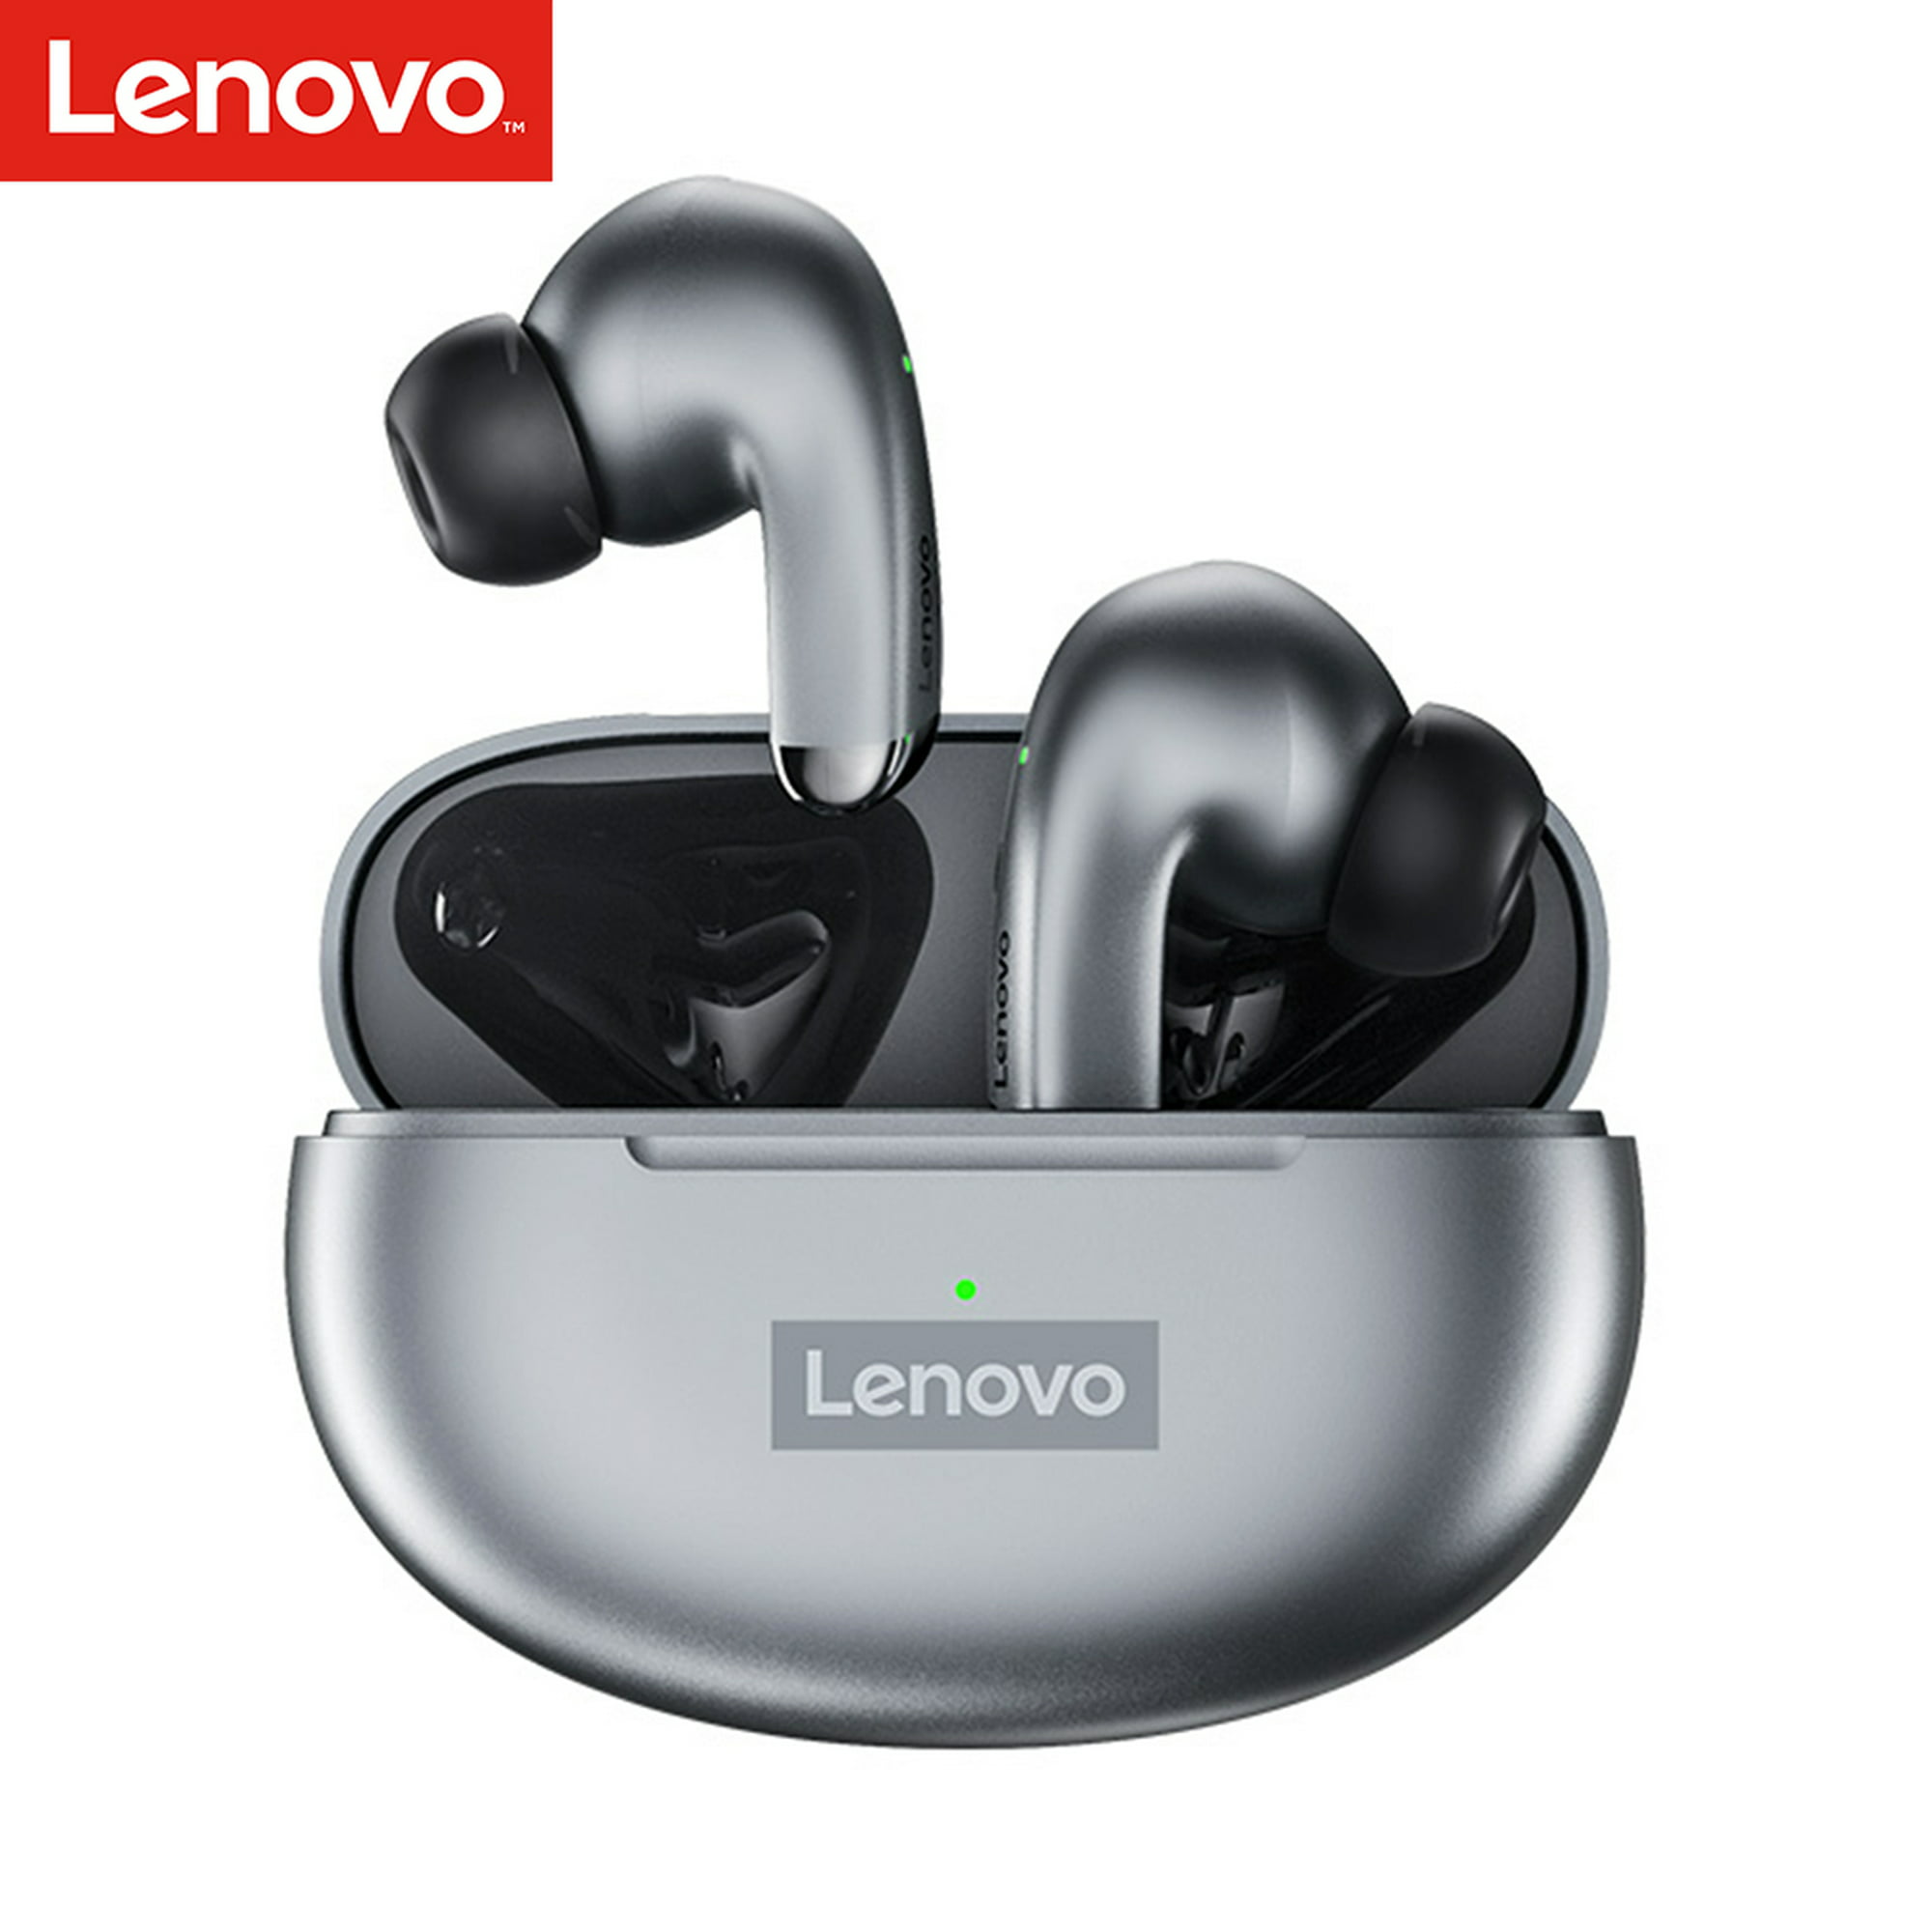  Lenovo Auriculares inalámbricos Bluetooth 5.0 IPX5 impermeables  (negro) y mouse inalámbrico 530 con batería, Nano USB de 2.4 GHz, sensor  óptico de 1200 DPI, GY50Z18984, gris platino : Electrónica